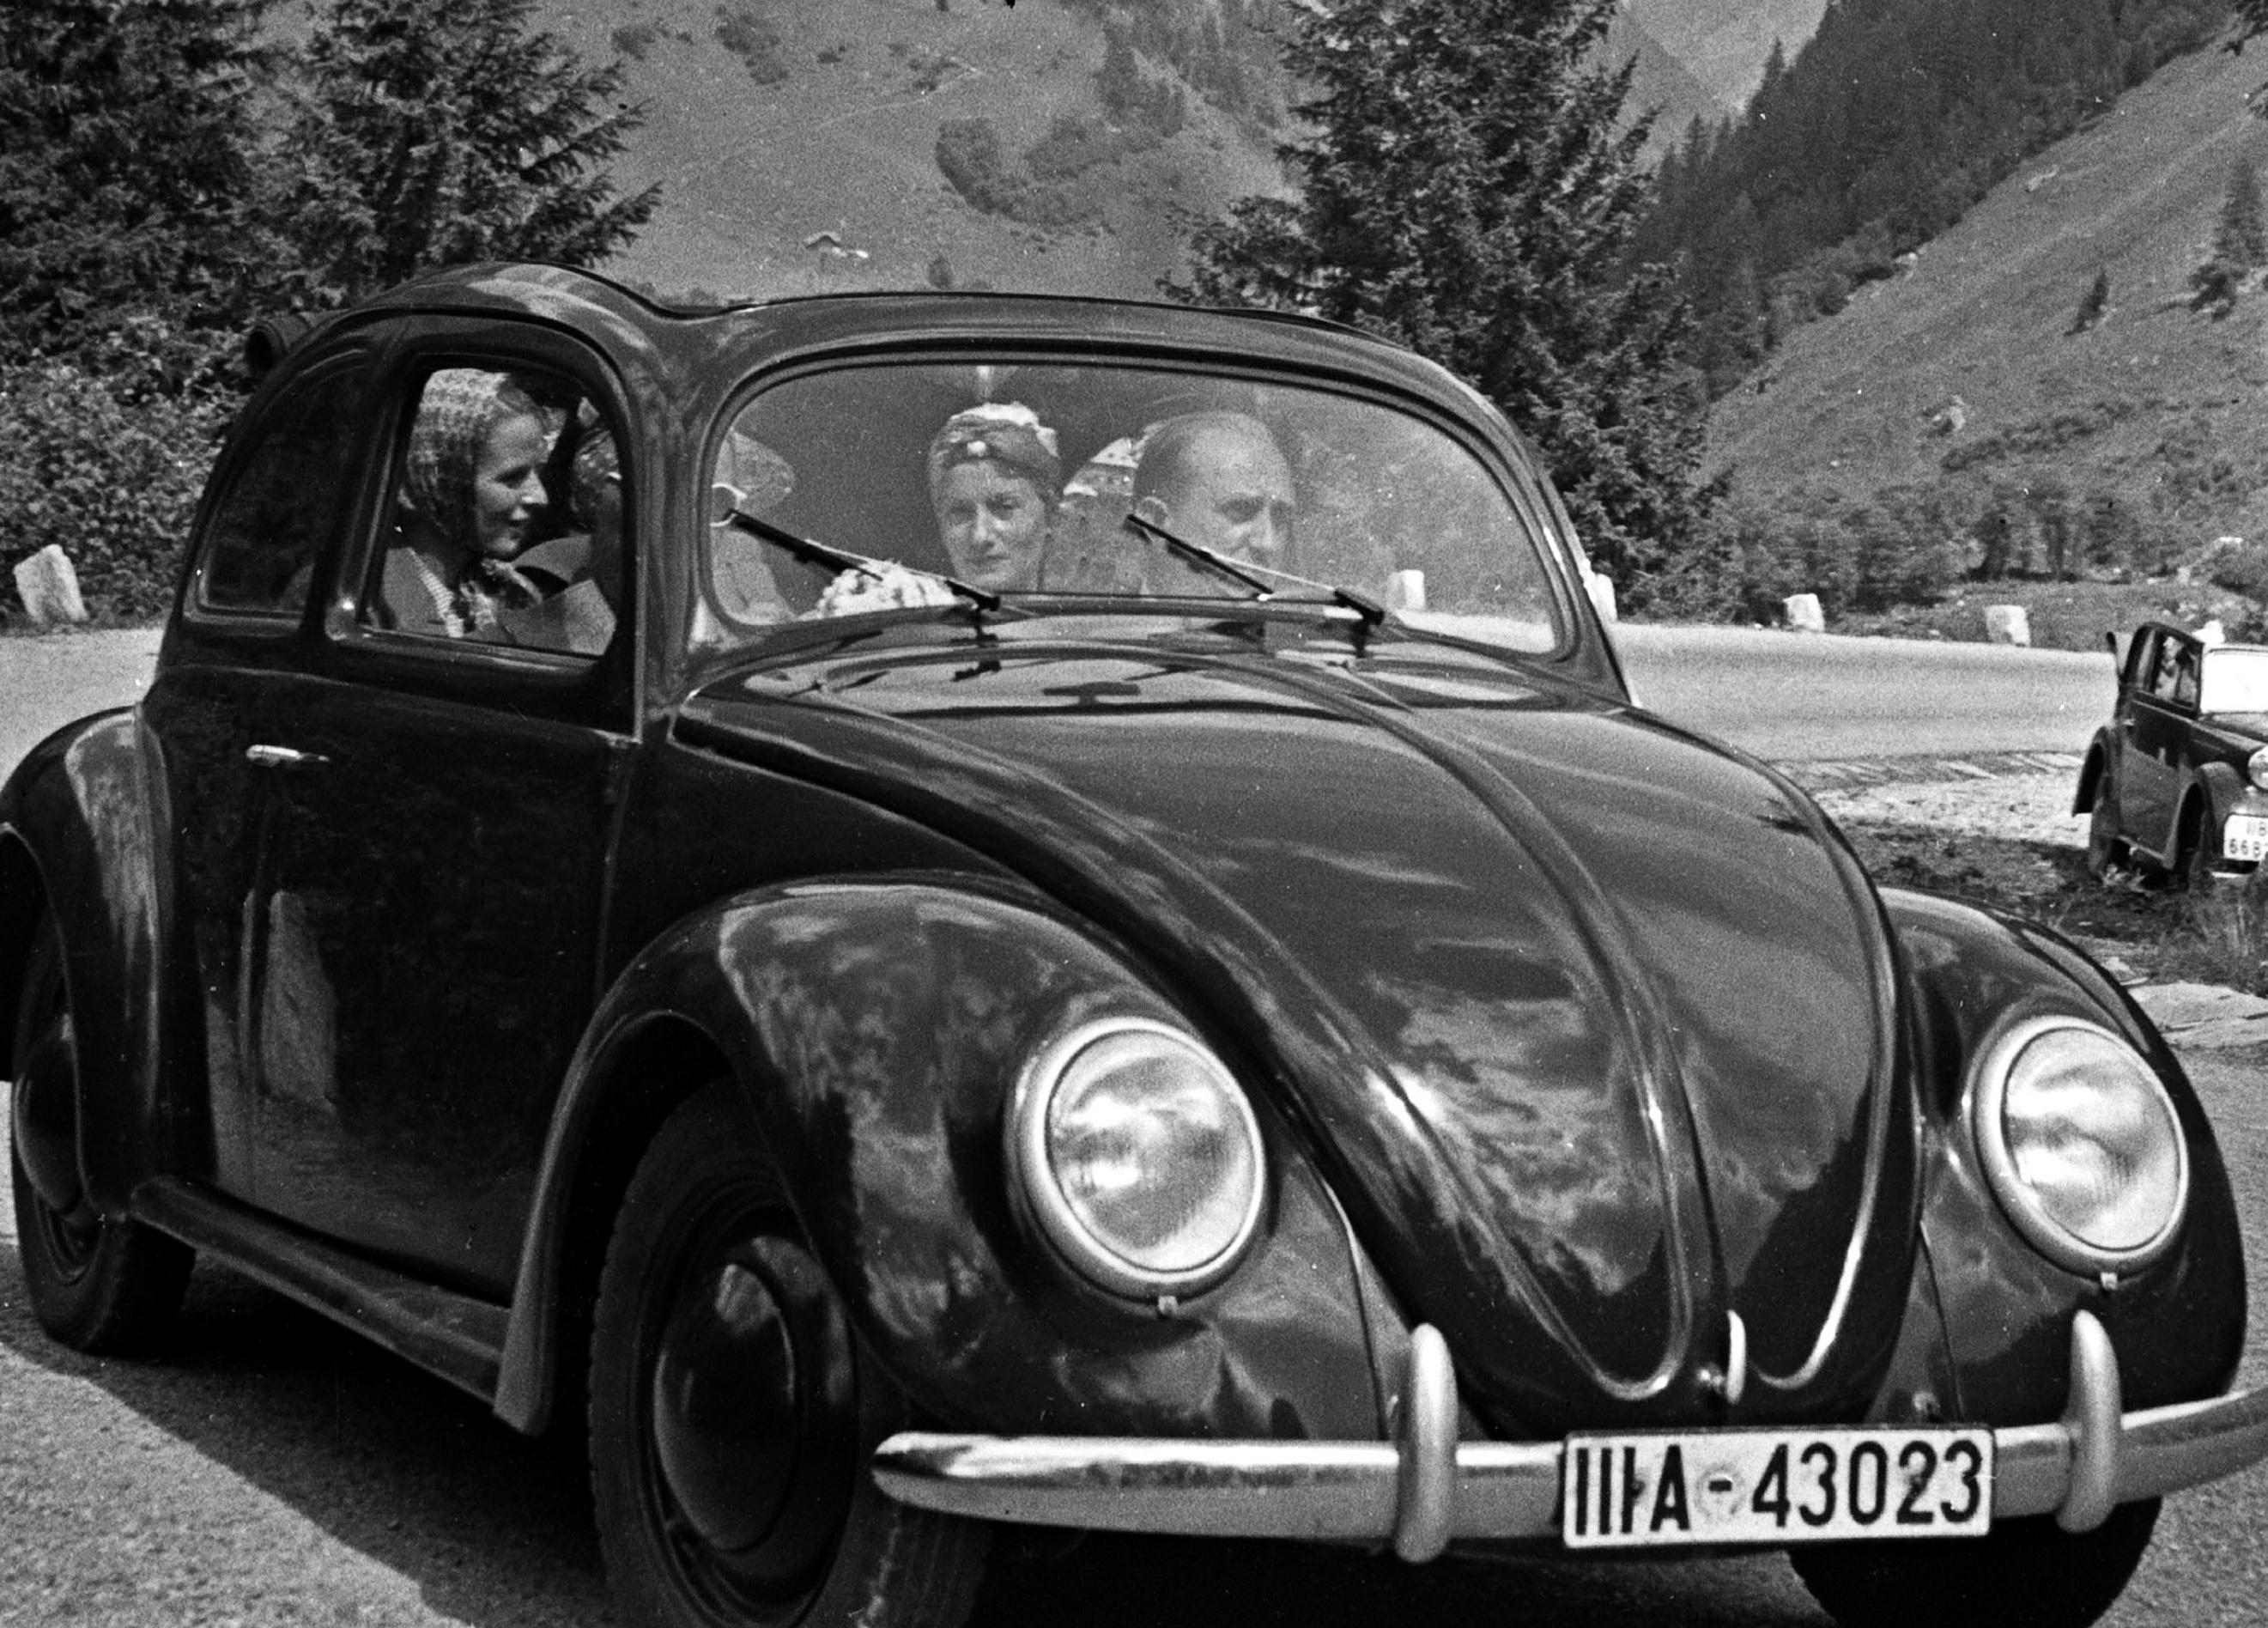 Exploration de la campagne dans un scarabée de Volkswagen, Allemagne, 1939 Imprimé plus tard - Photograph de Karl Heinrich Lämmel